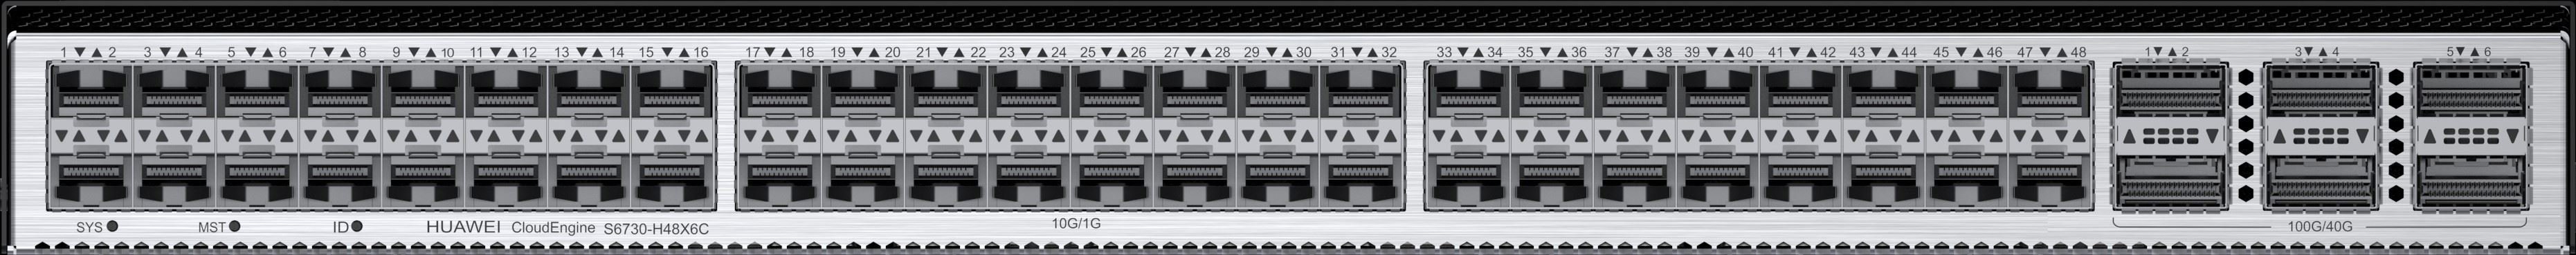 HUAWEI S6730-H48X6C 48 x 10 Gig SFP+ 6 x 40/100 Gig QSFP28 Port